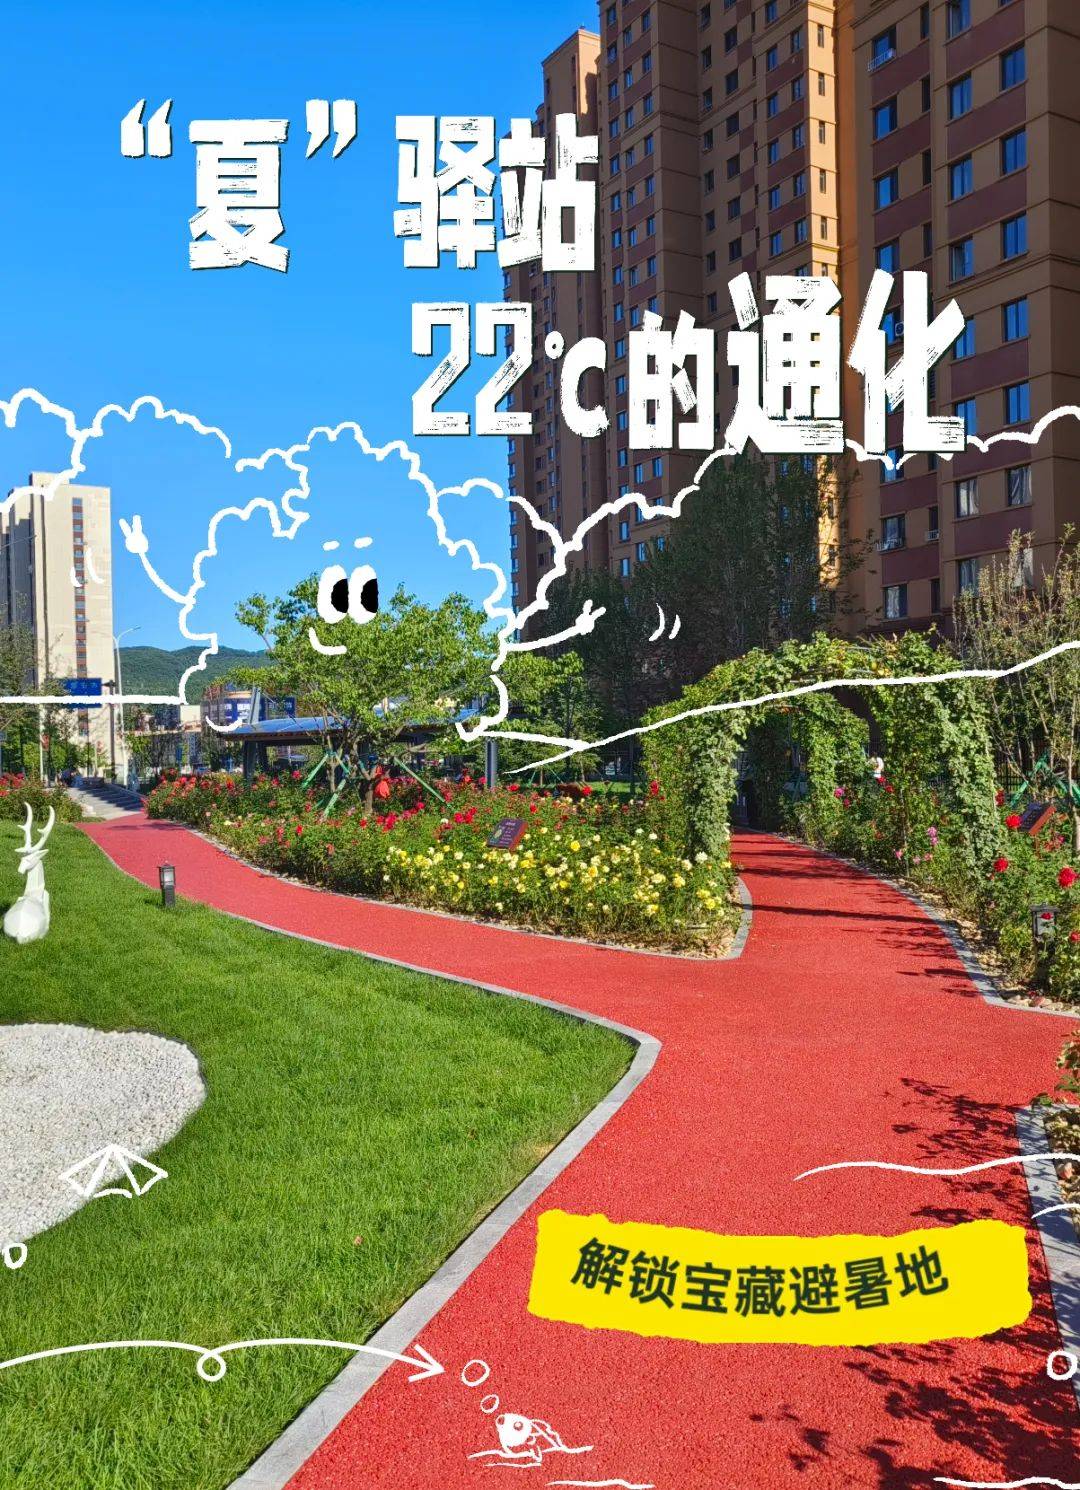 夏驿站,22℃的通化!漫游城市公园